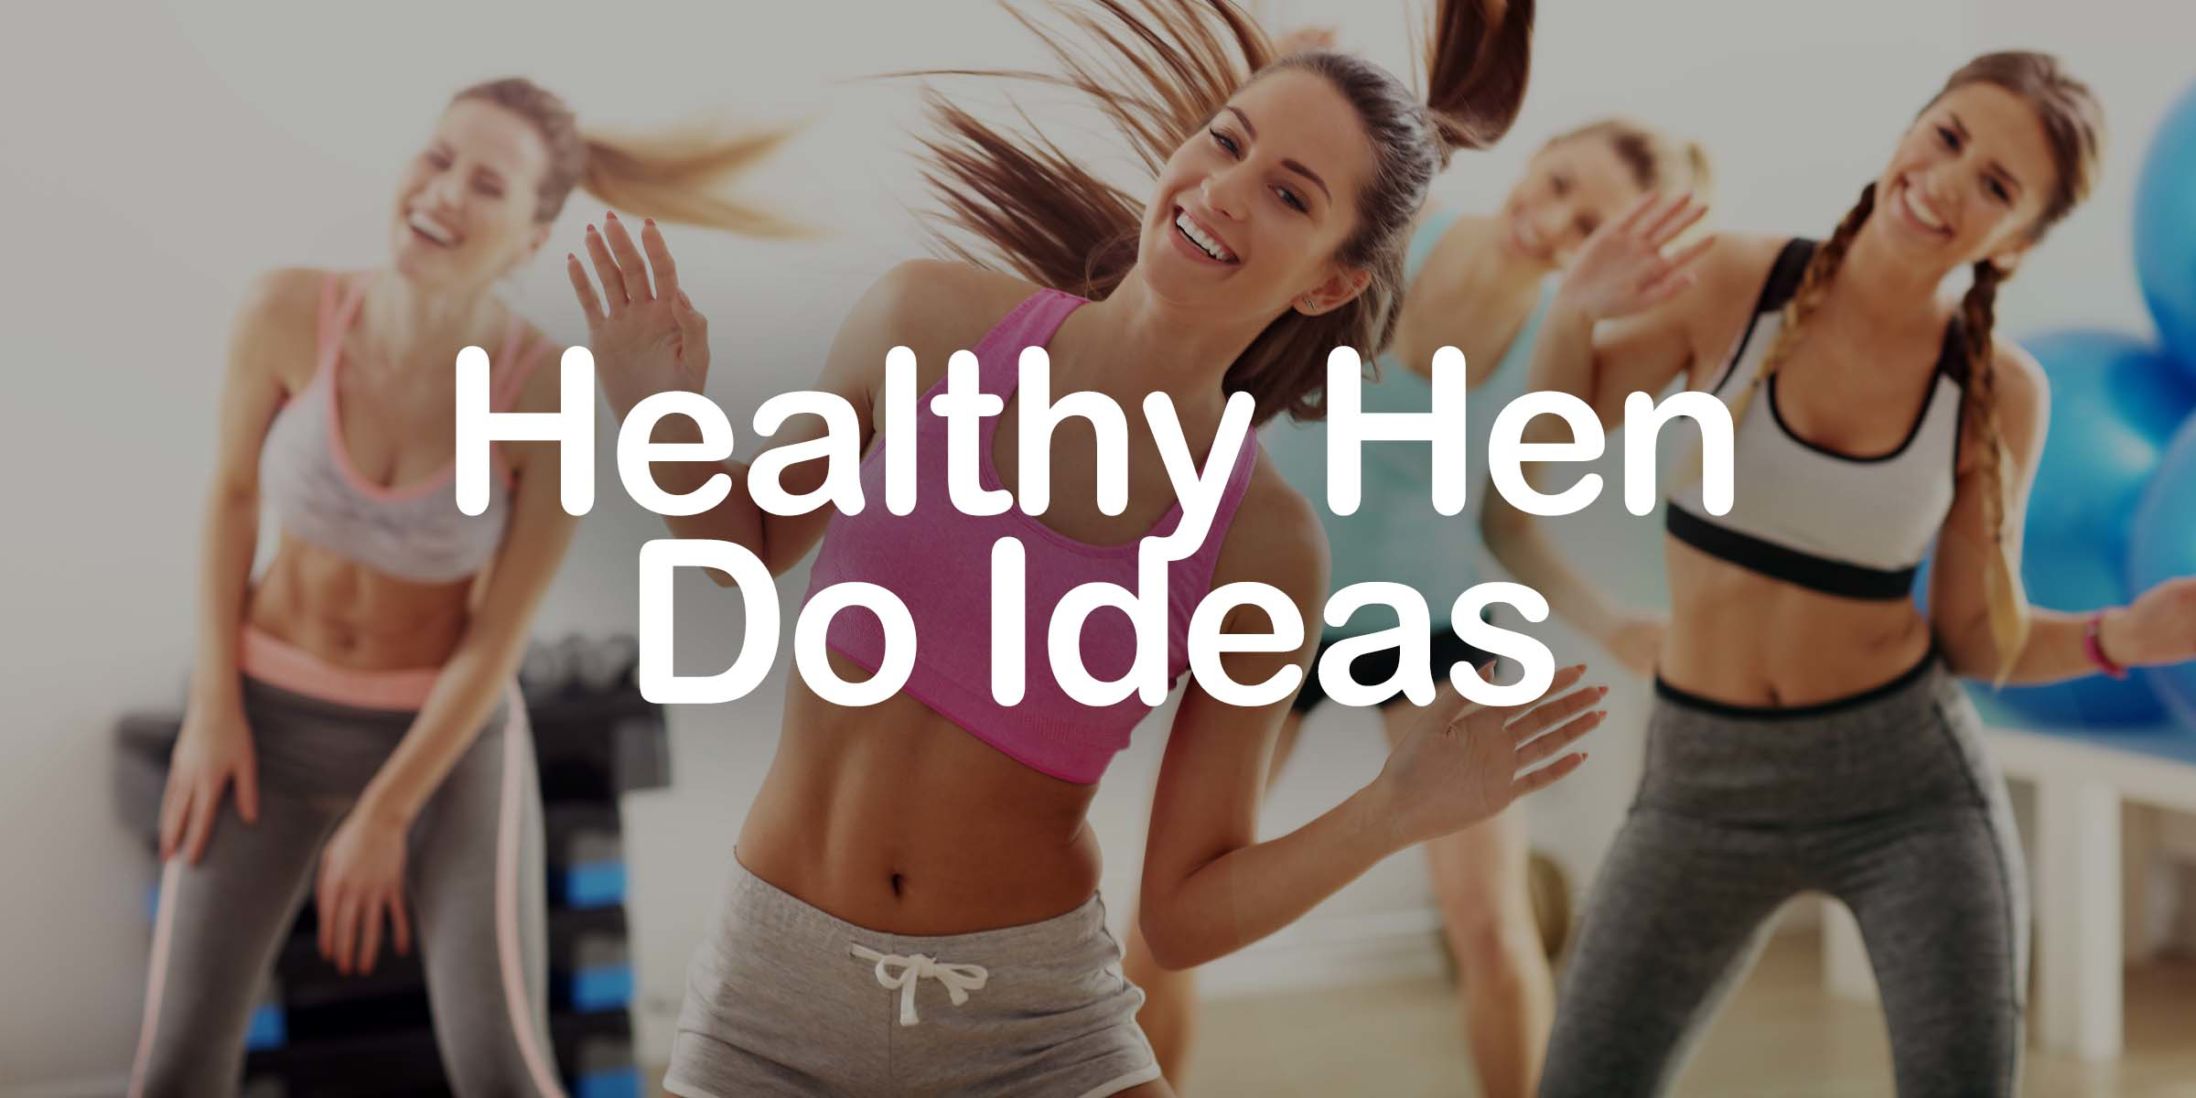 Healthy Hen Party Ideas